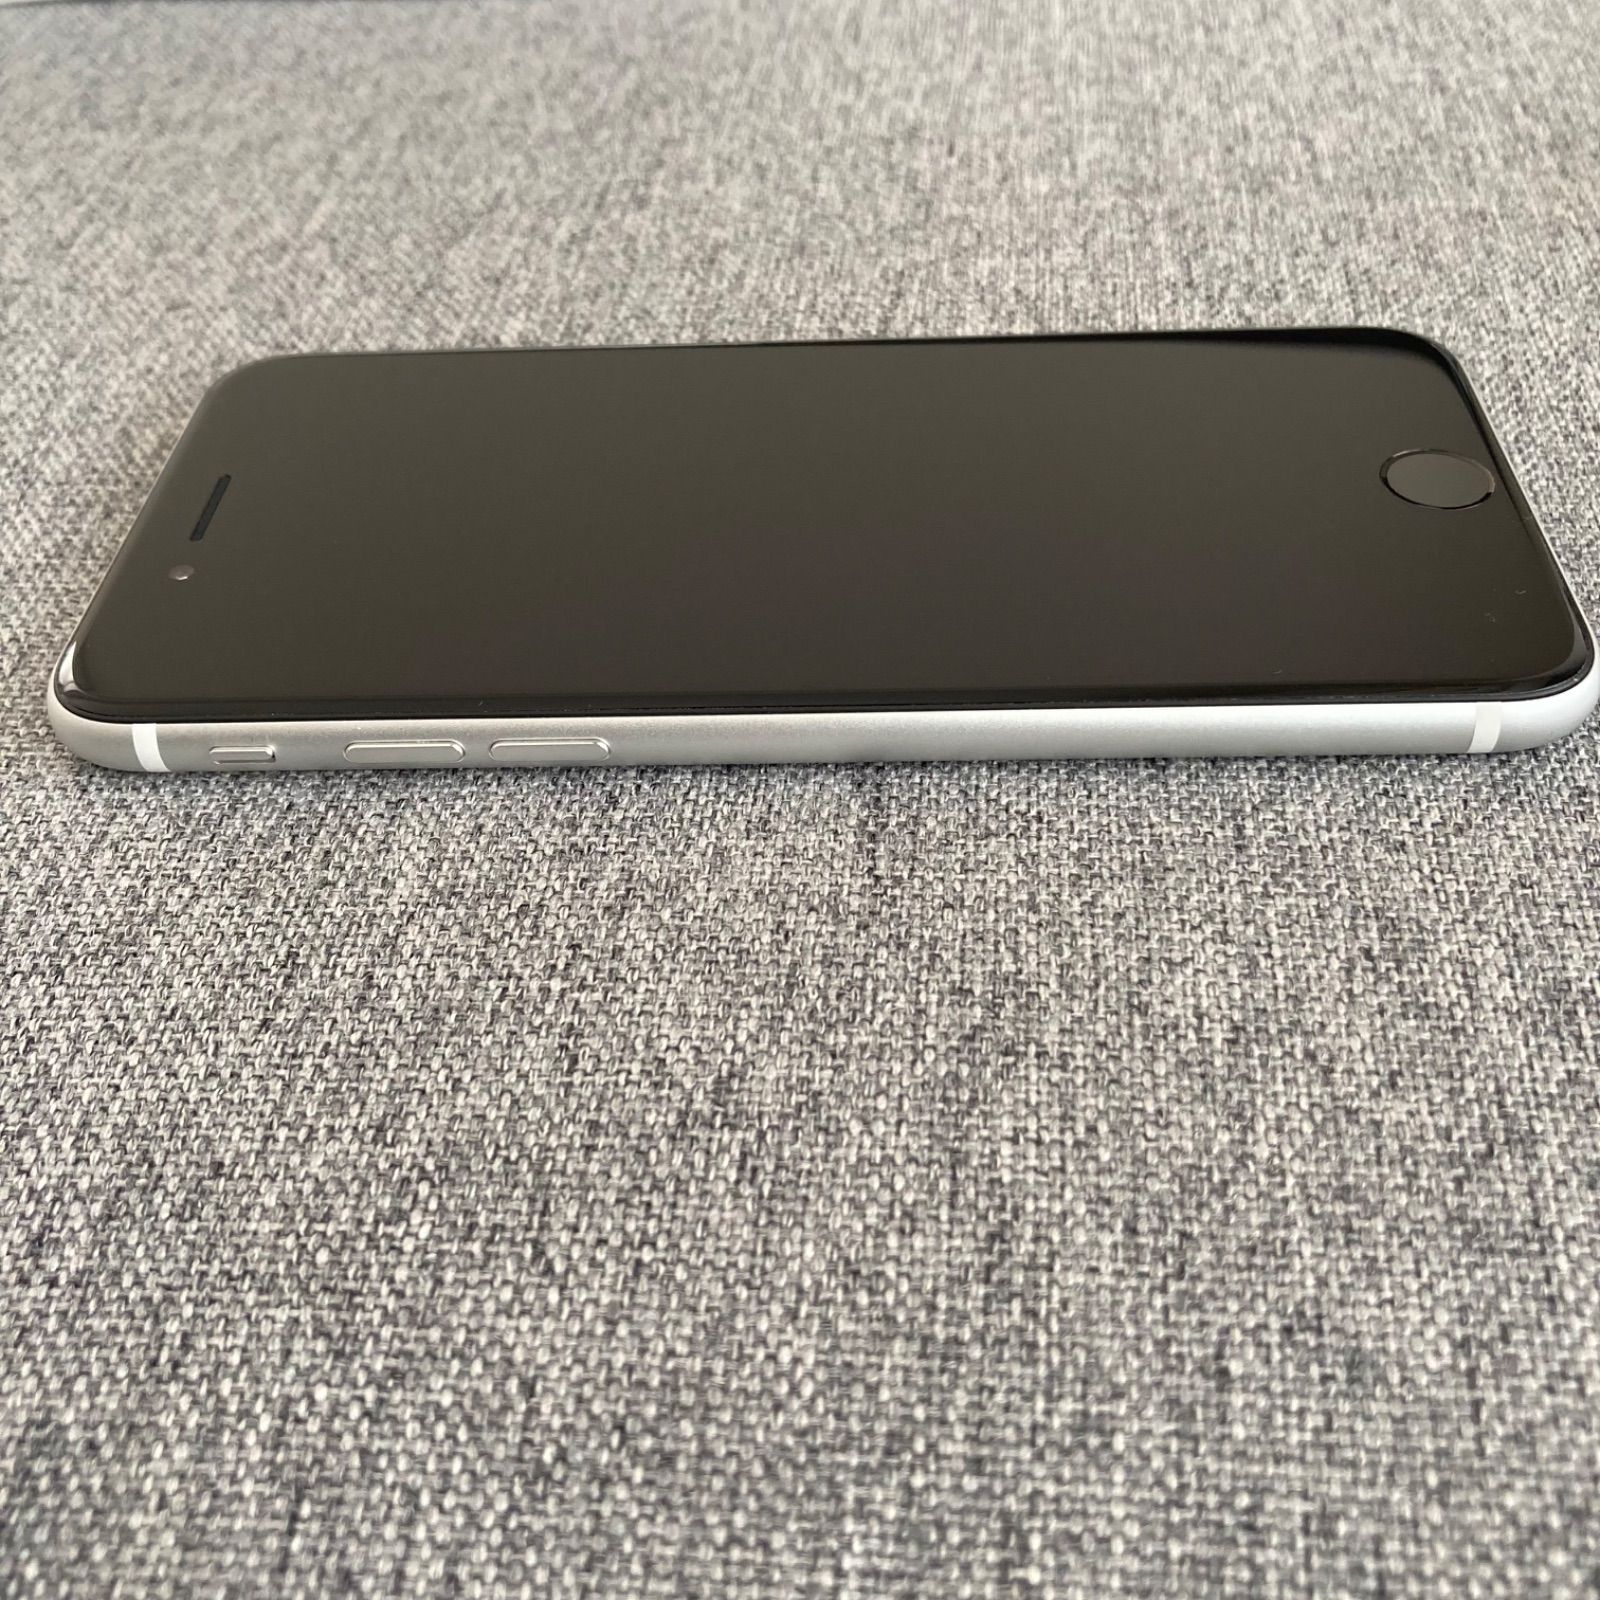 極美品】iPhone SE 第2世代 128GB SIMフリー ホワイト 白 - メルカリShops